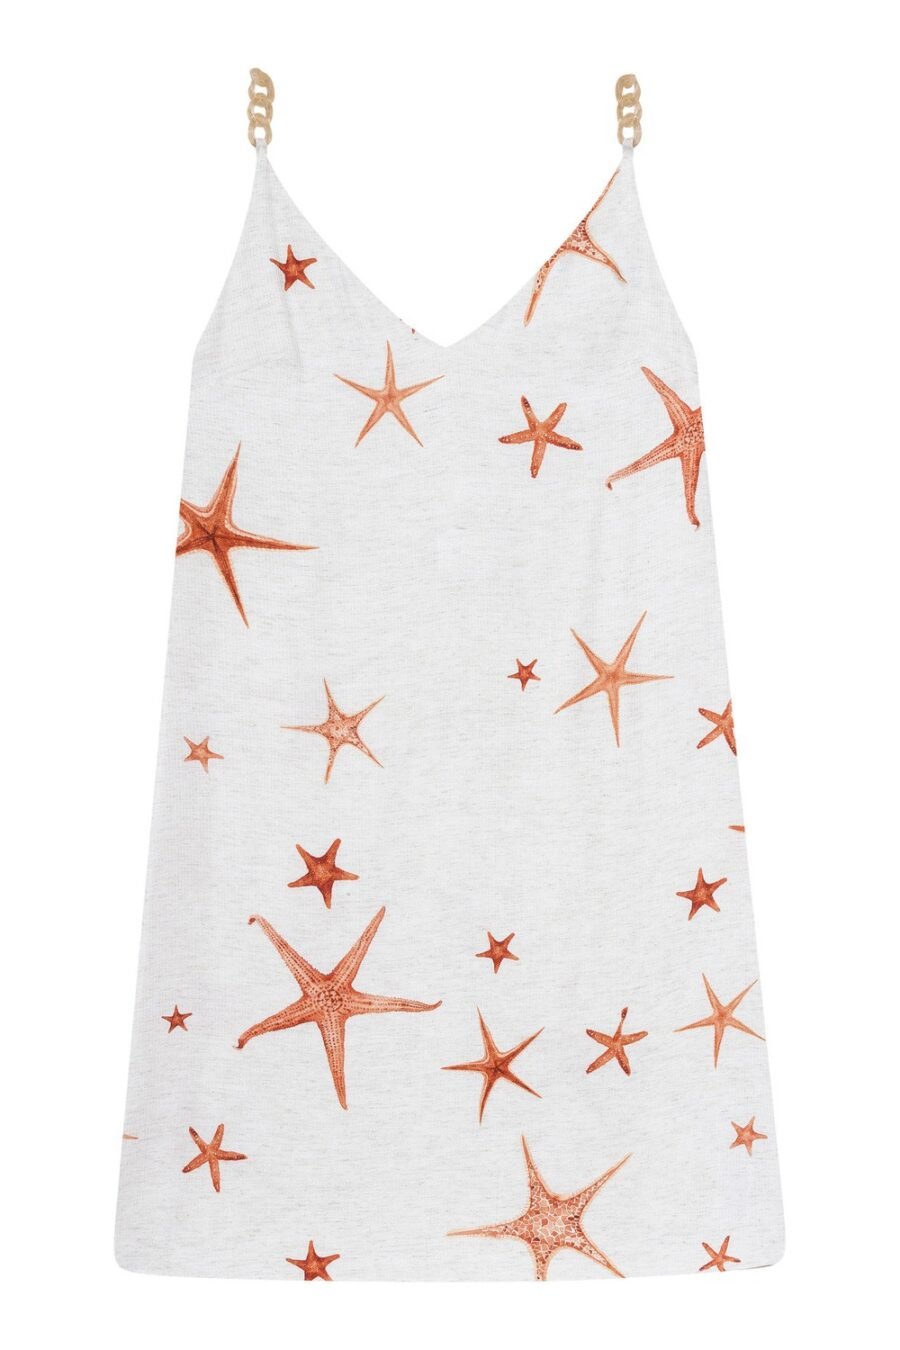 “Starfish Wishes” Dress by Lez a Lez